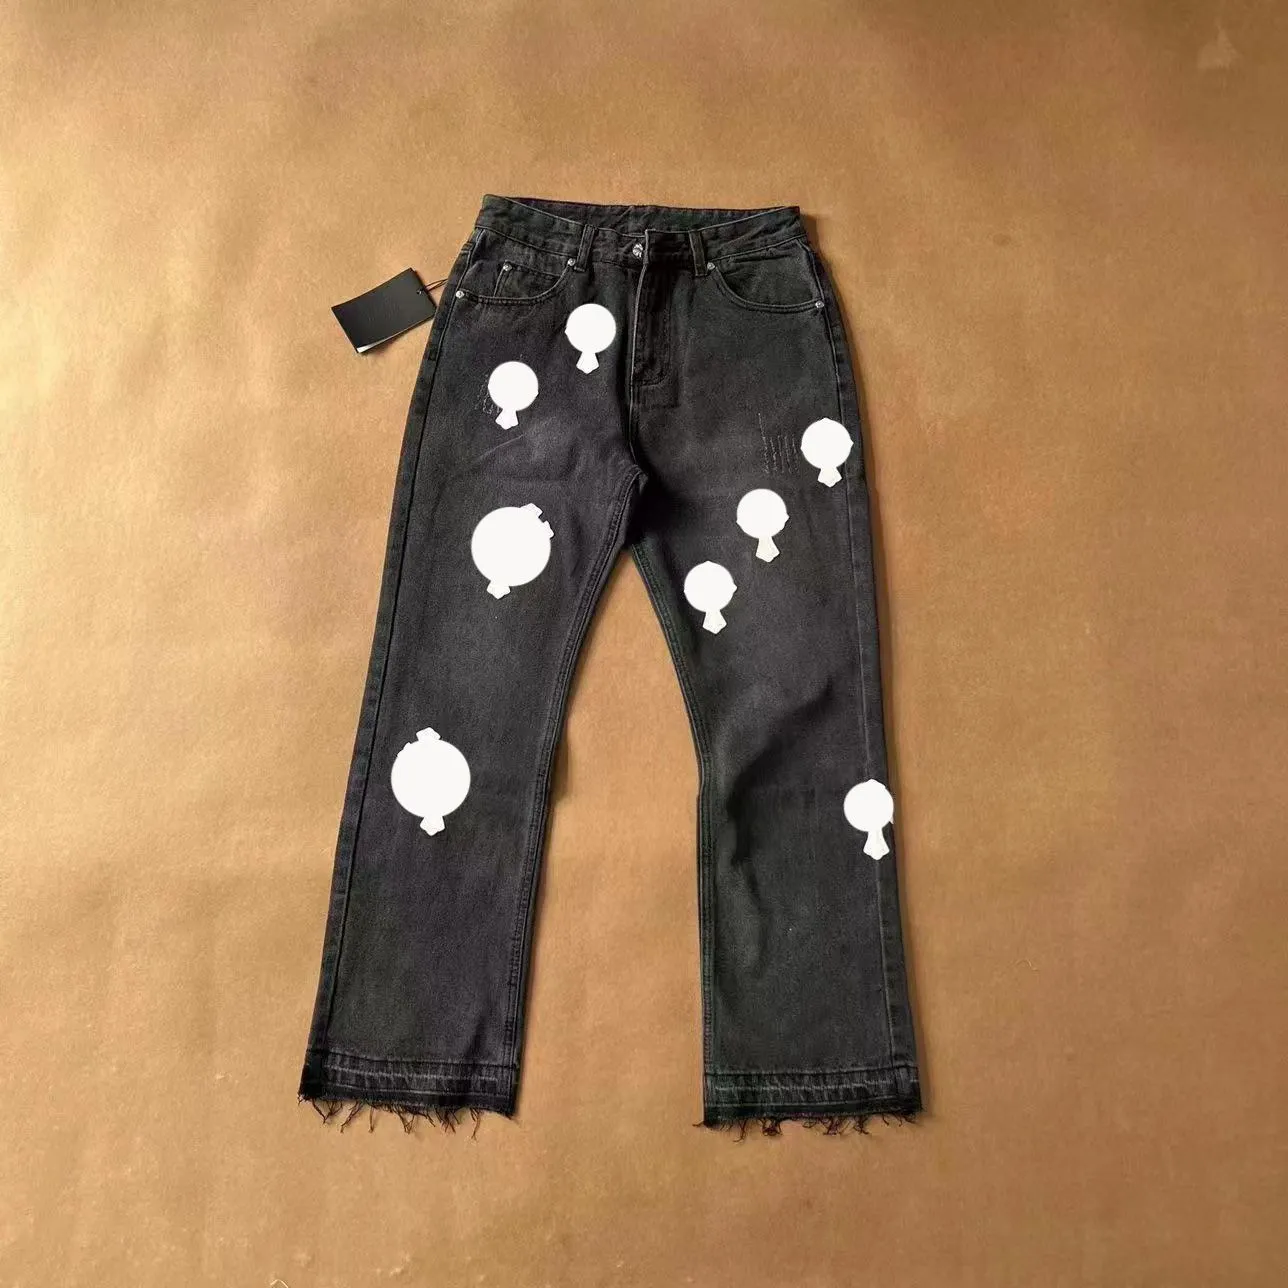 Designer di jeans da uomo Realizza vecchi jeans lavati Pantaloni dritti cromati Stampe con lettere a cuore per donna Uomo Casual stile lungo cromato con cuori Jeans 4DUY